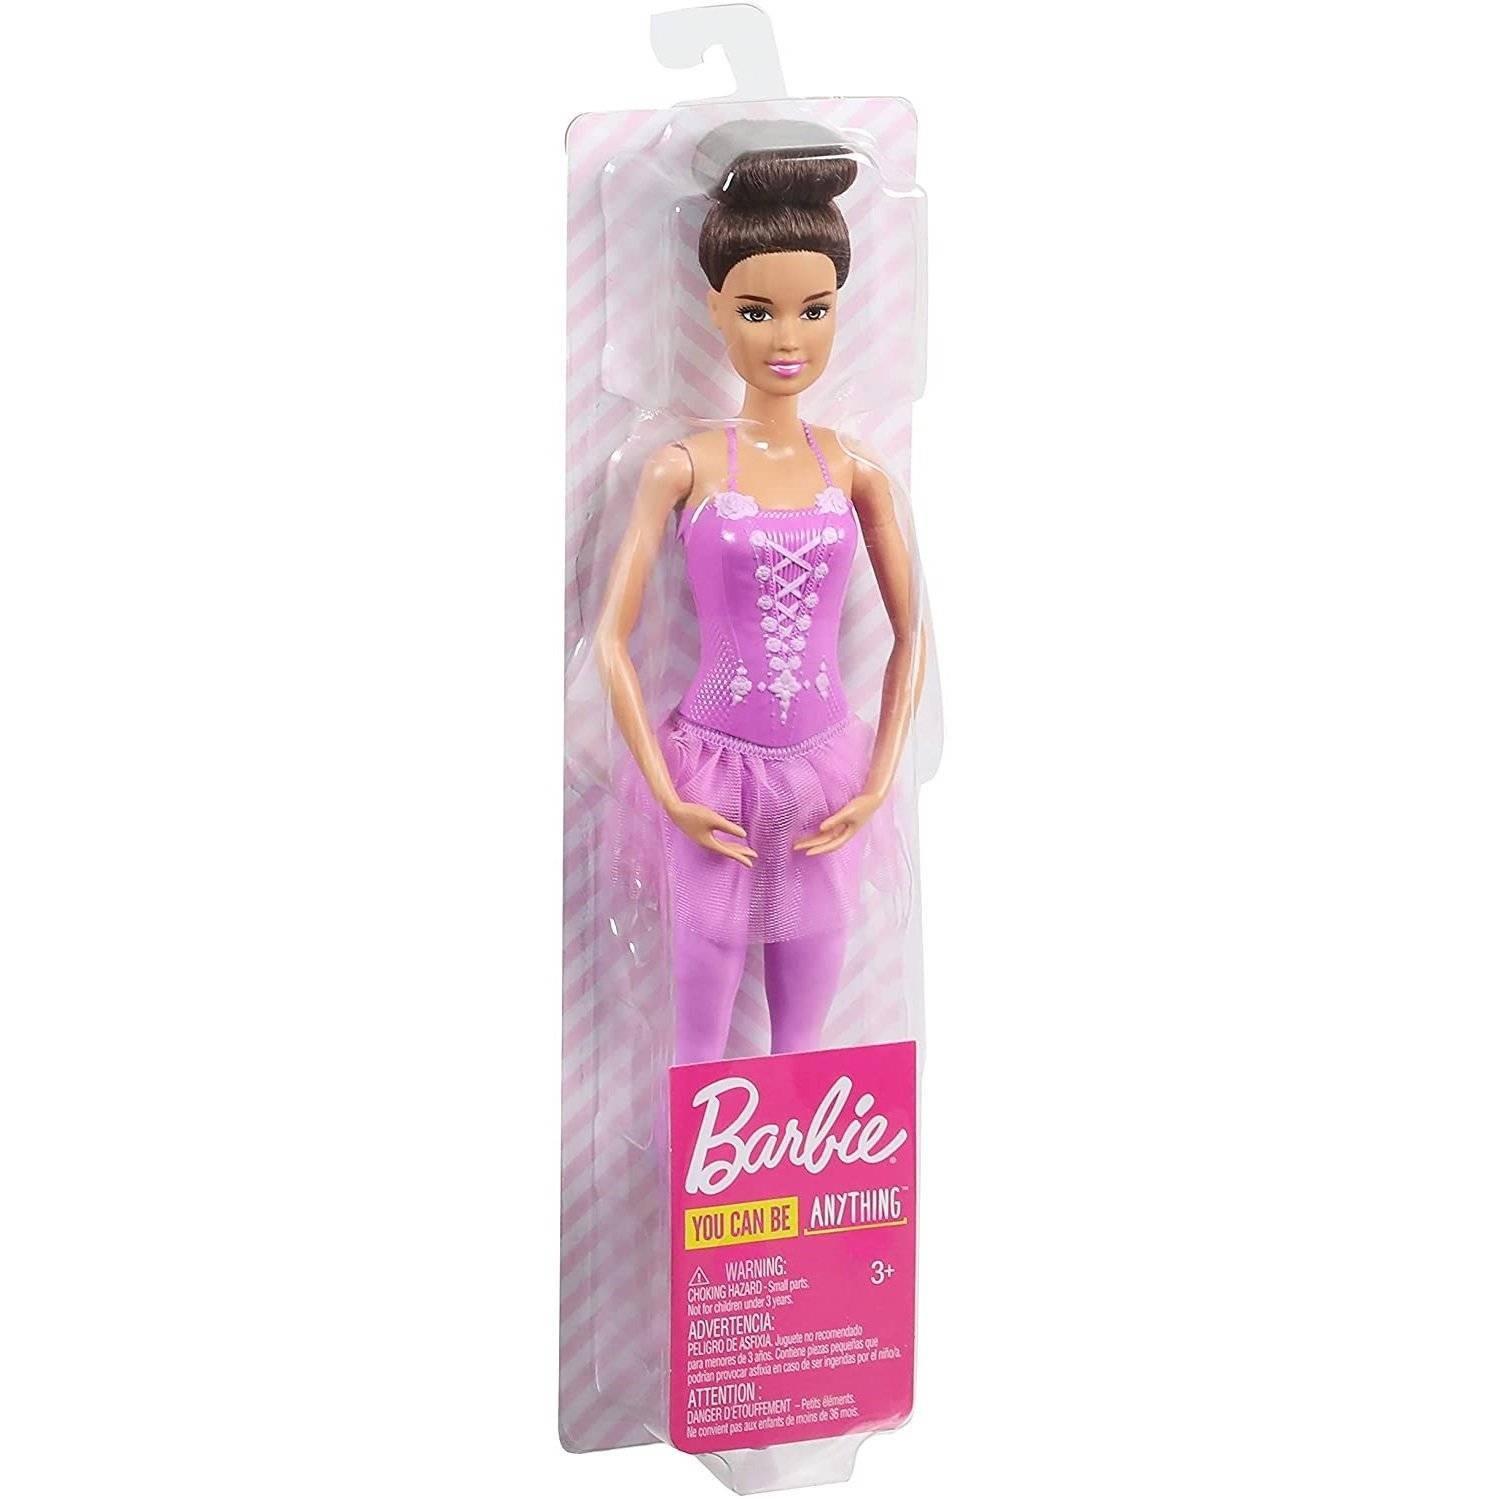 2x Unidades Carrinho Da Barbie Controle Remoto Rosa Meninas